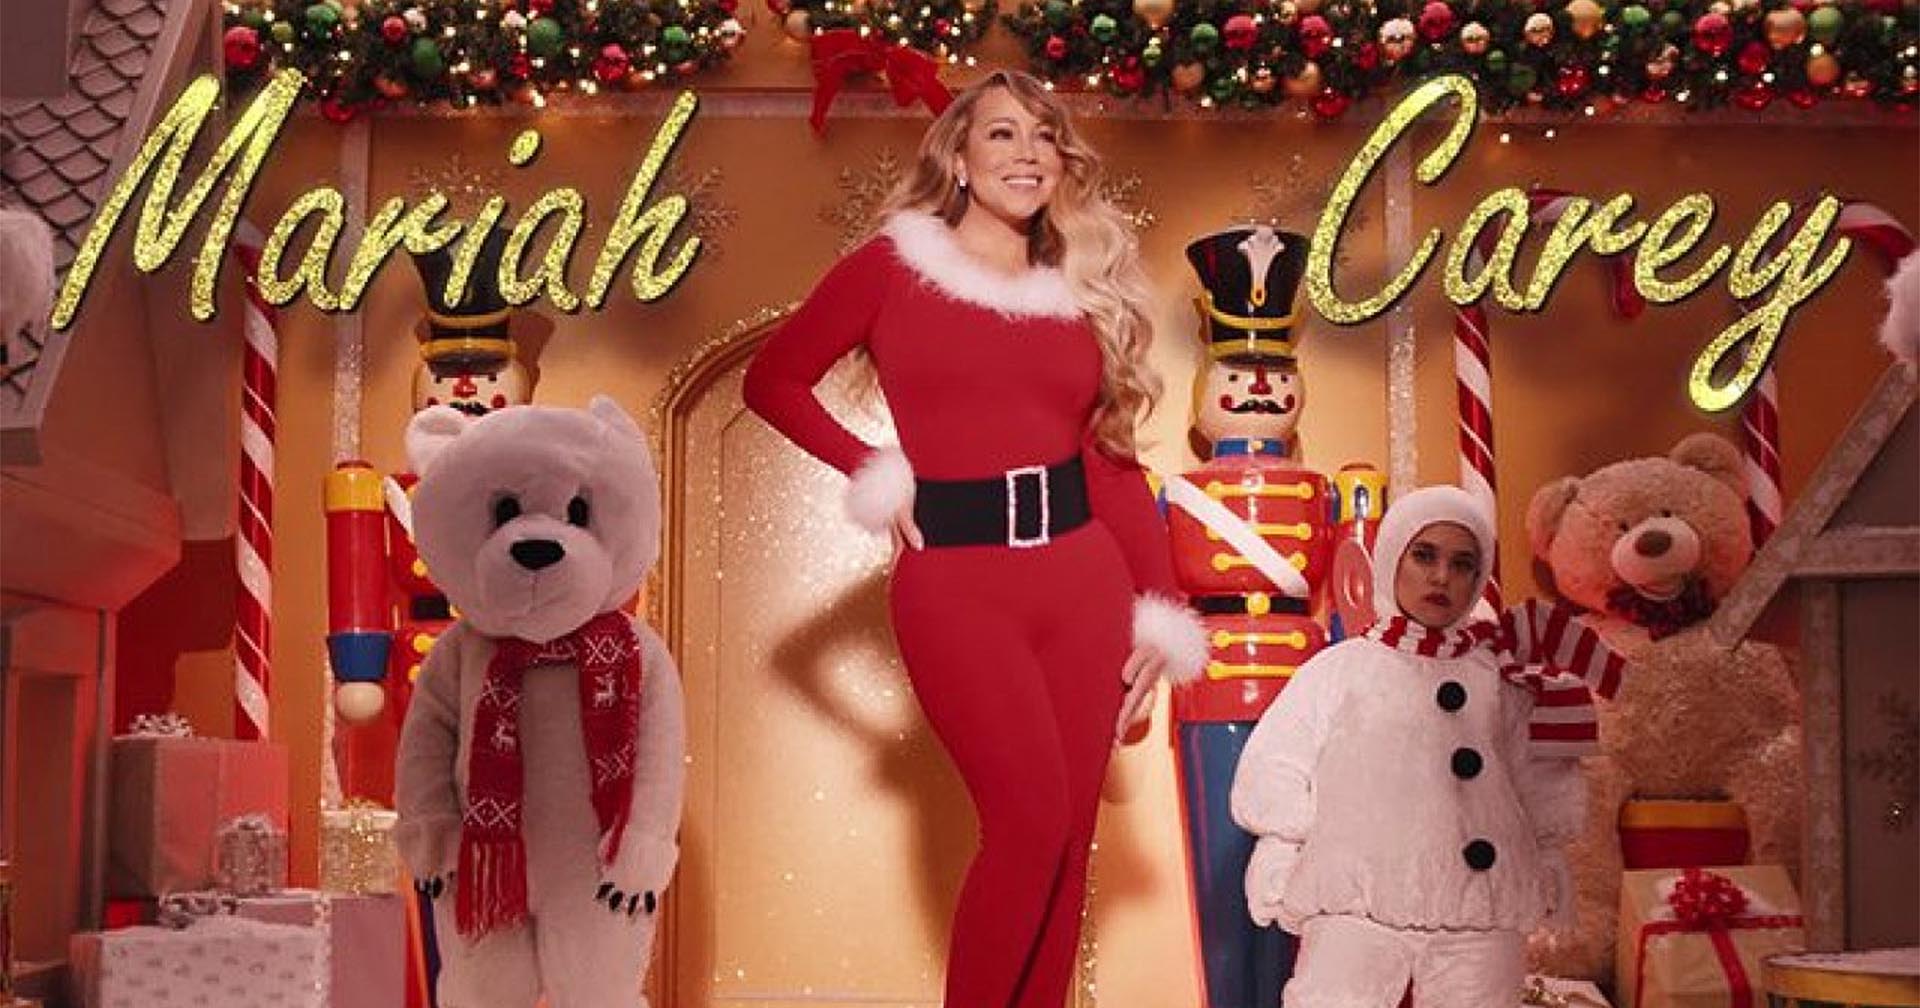 Mariah Carey ประกาศ ไม่ขอรับฉายา “ราชินีแห่งเทศกาลคริสต์มาส”